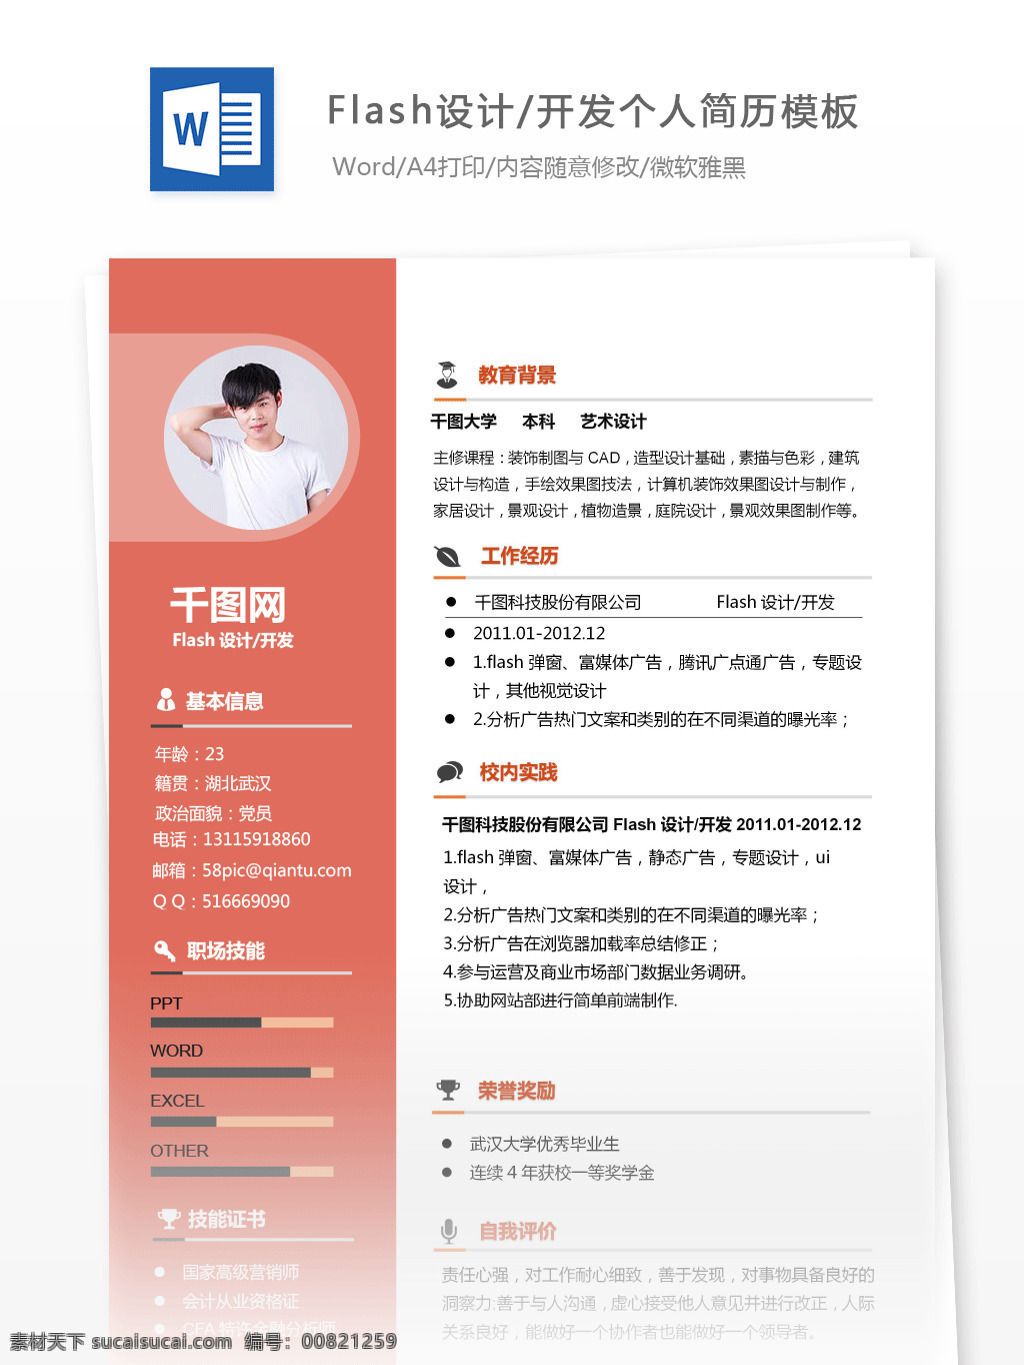 姜 璇 玟 flash 设计开发 个人简历 模板 简历 互联网 红色 简历模板 个人简历模板 开发 13年 简洁